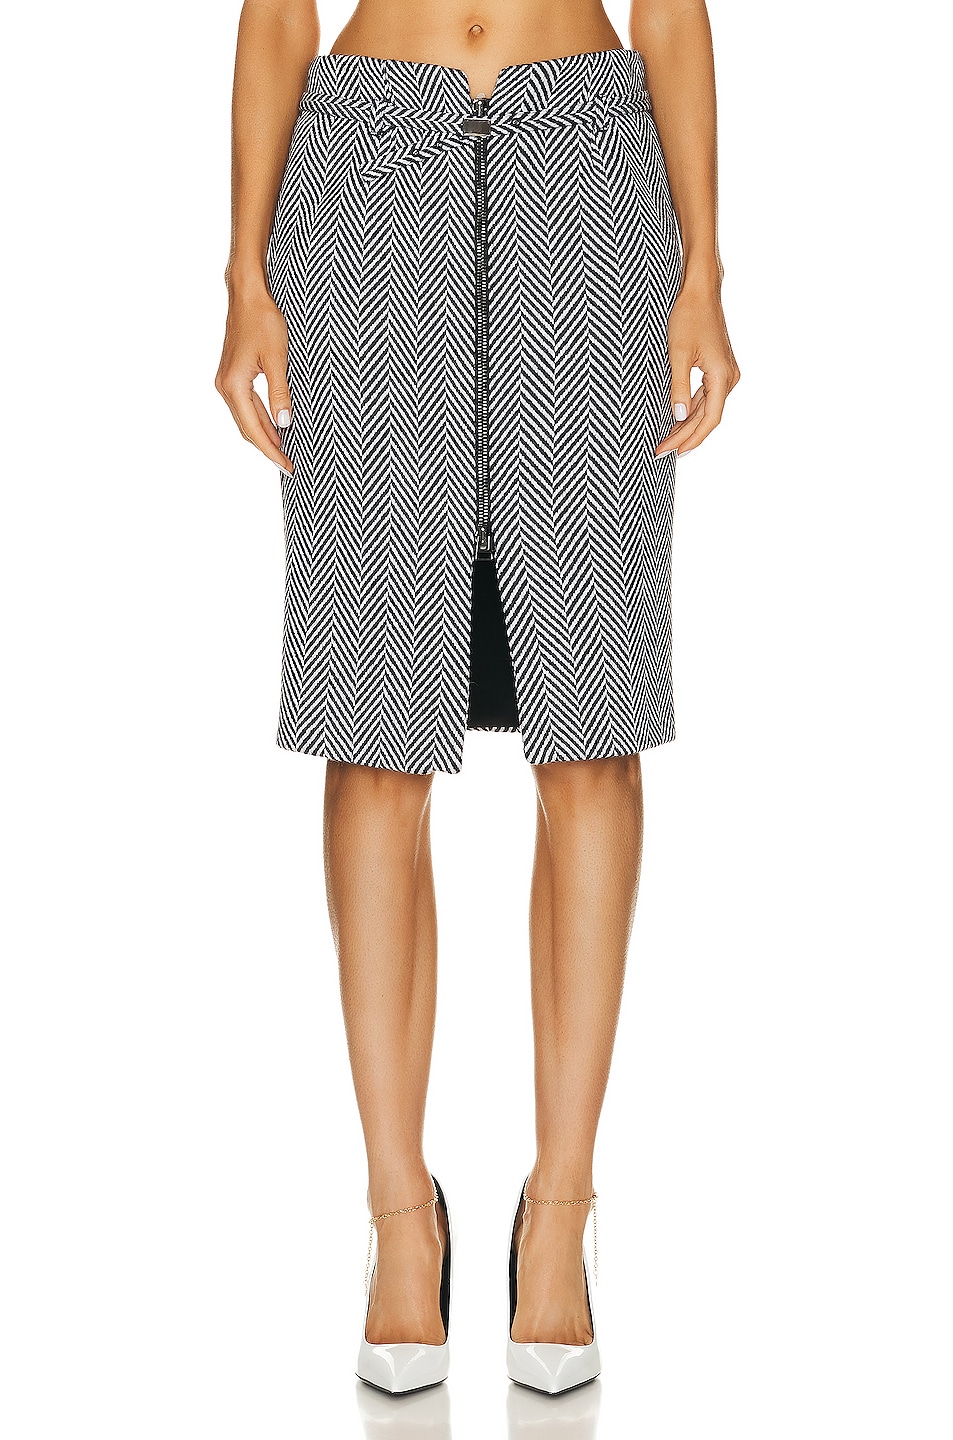 Image 1 of TOM FORD Chevron Zipped Skirt in Black & White